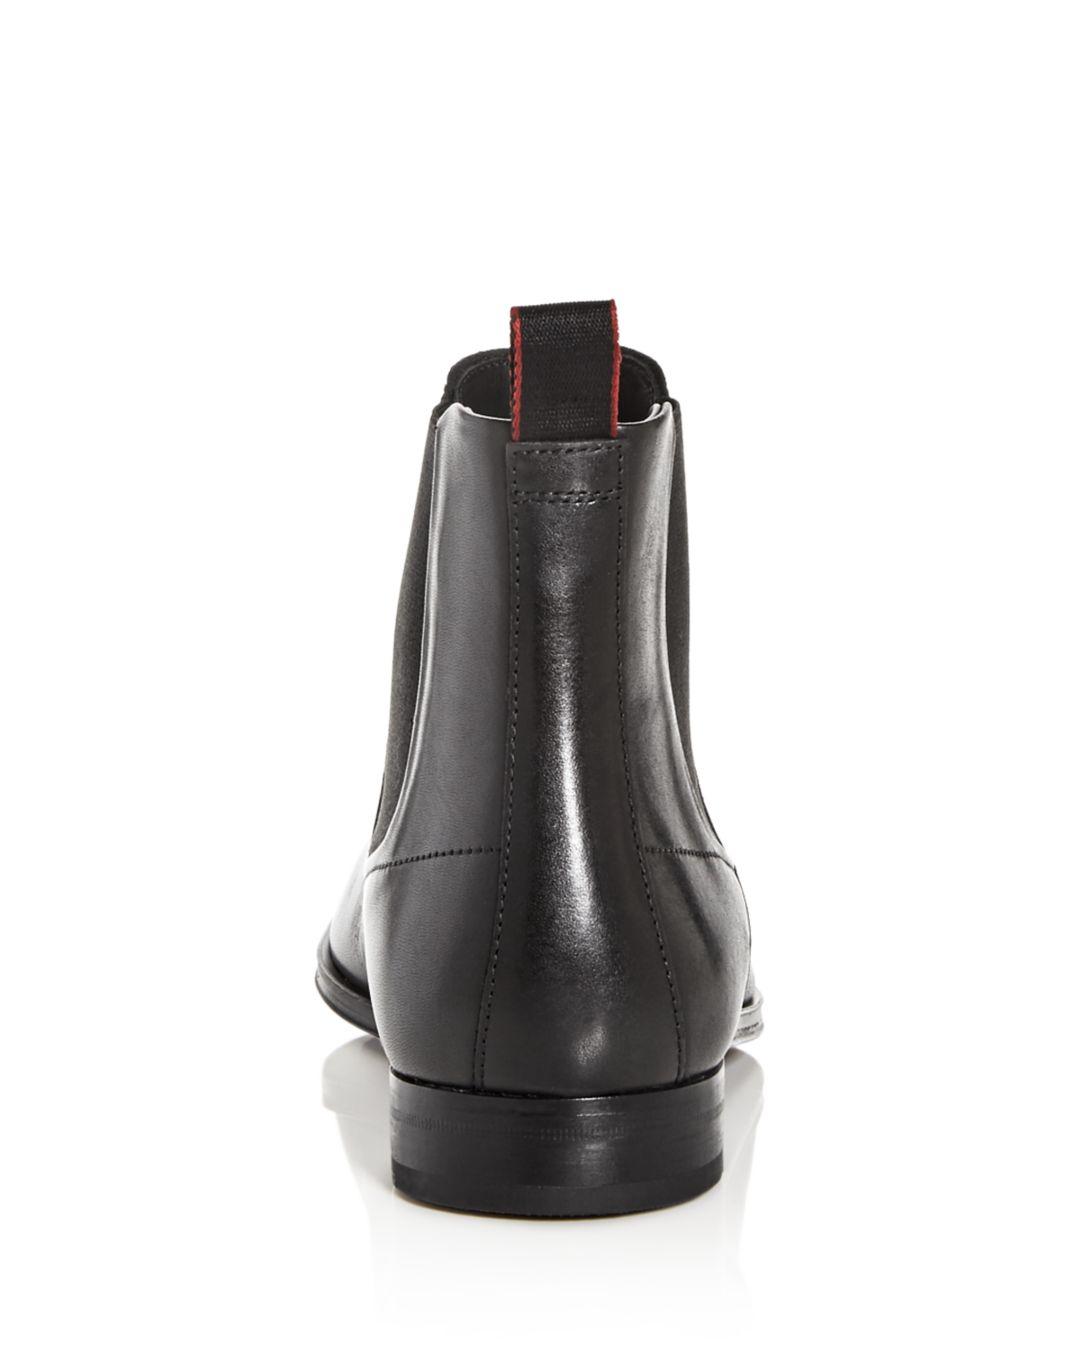 BOSS by HUGO BOSS Leather Boheme Chelsea Boot in Black for Men - Lyst